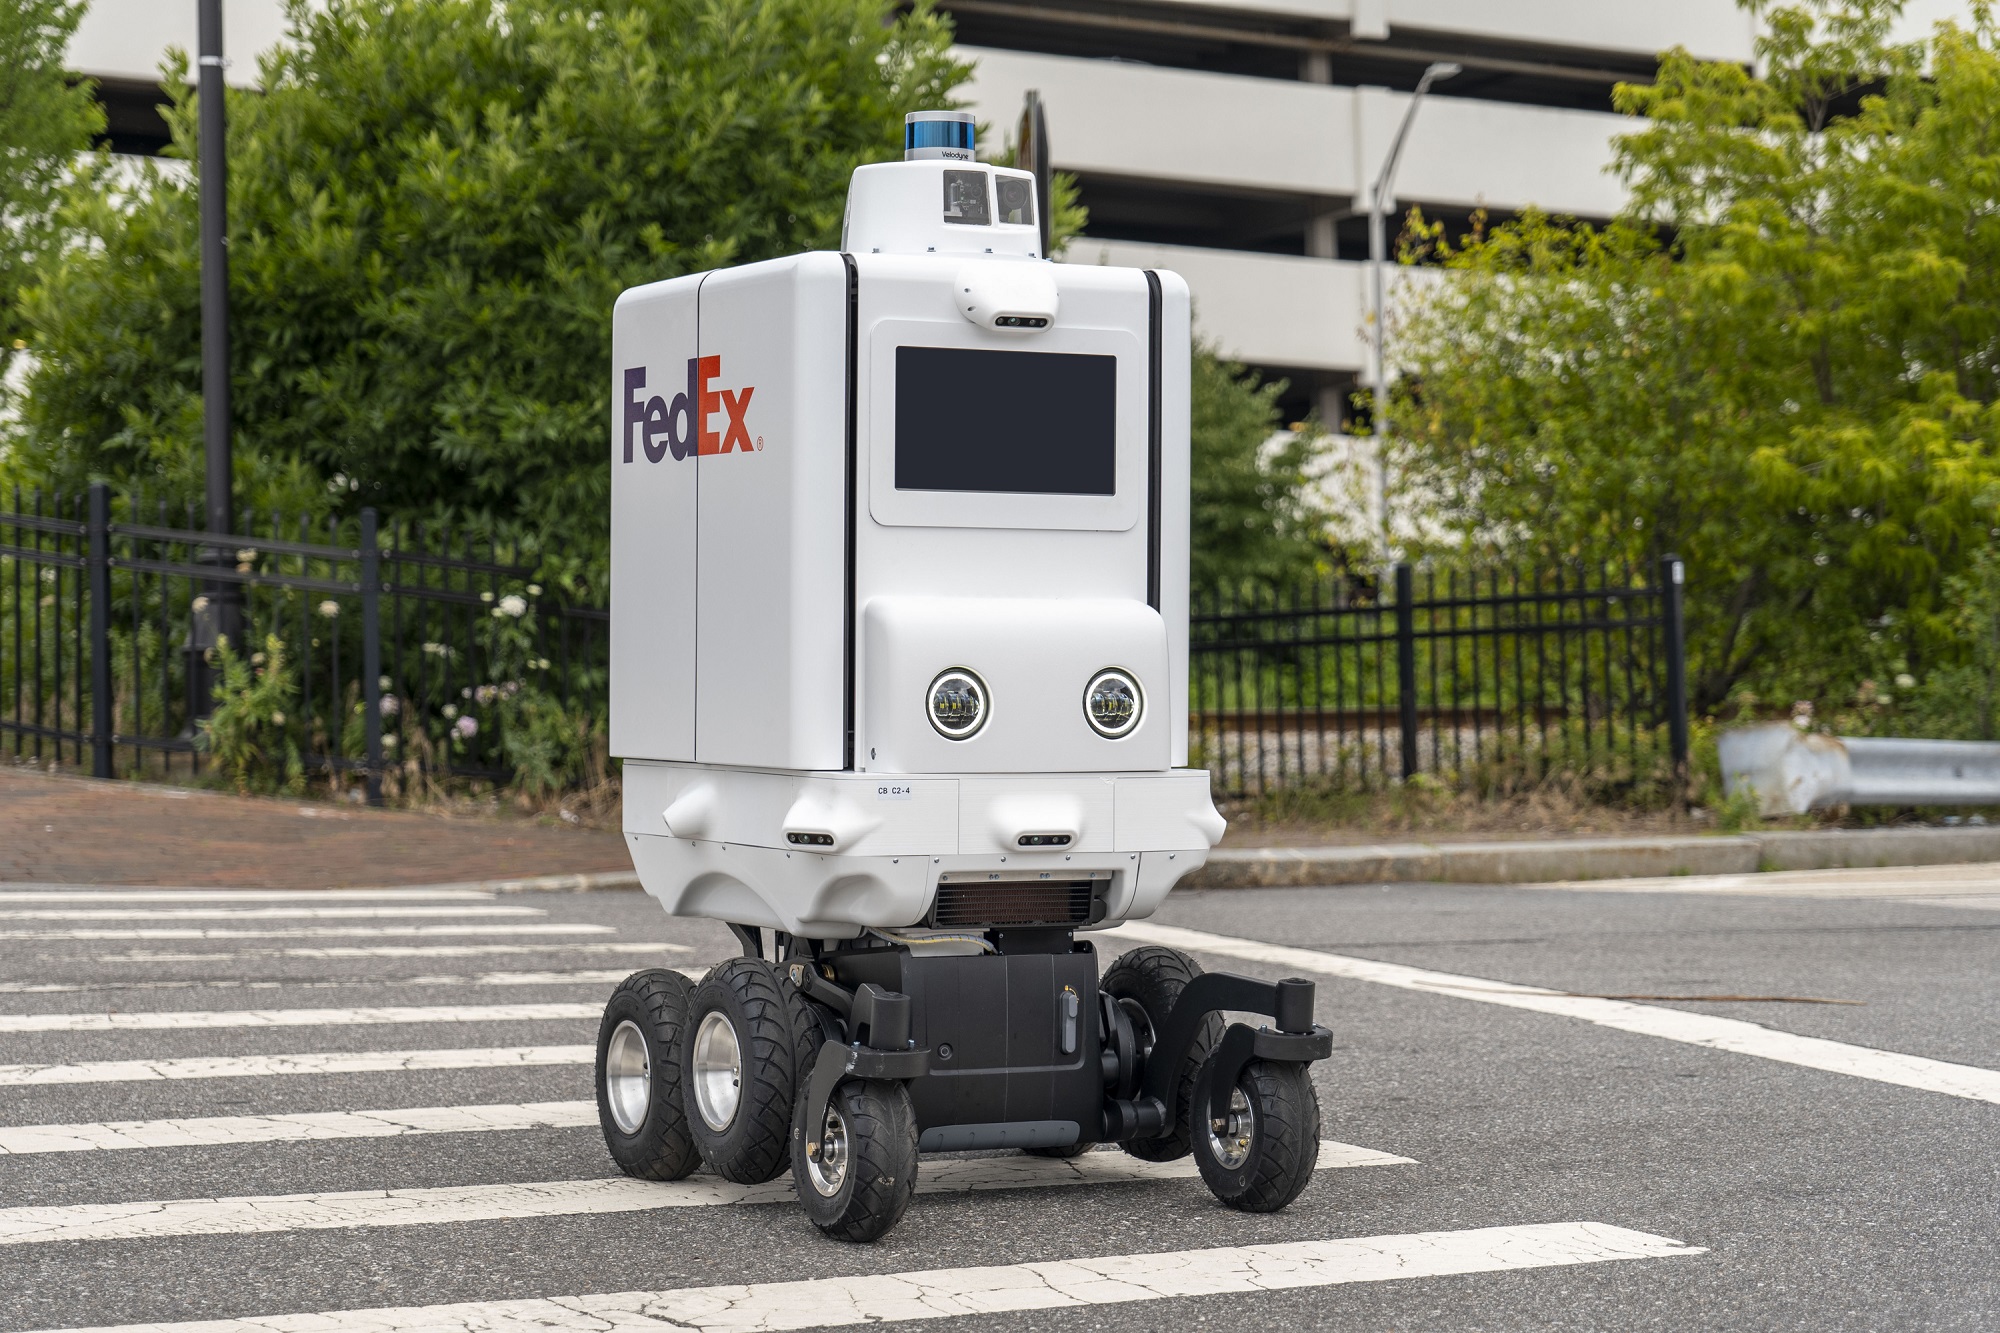 การใช้งานหุ่นยนต์ในอุตสาหกรรมโลจิสติกส์ : ผสานเทคโนโลยีและการขนส่งเข้าด้วยกันเพื่อสังคมที่ดีขึ้นในอนาคต